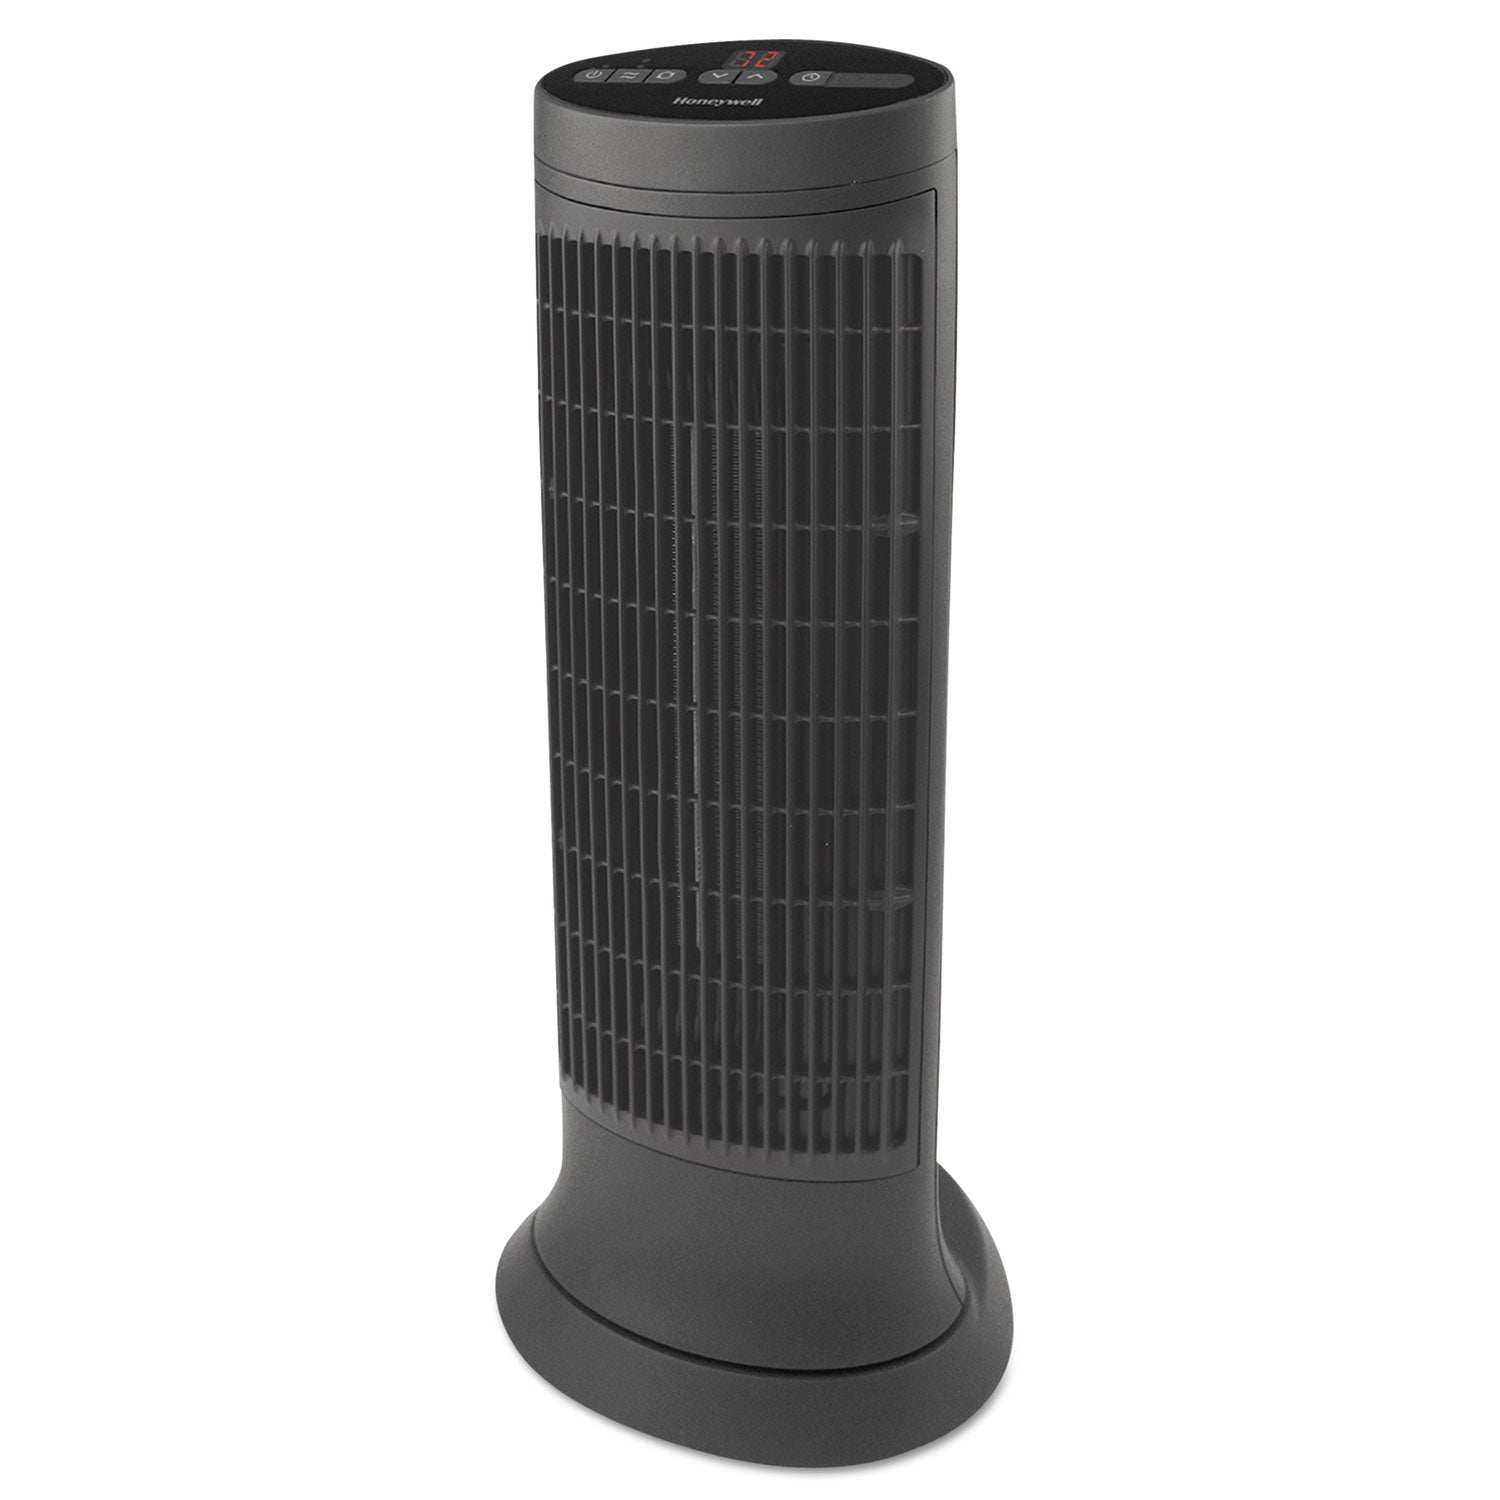 Digital Tower Heater, 1,500 W, 10.12 x 8 x 23.25, Black - 